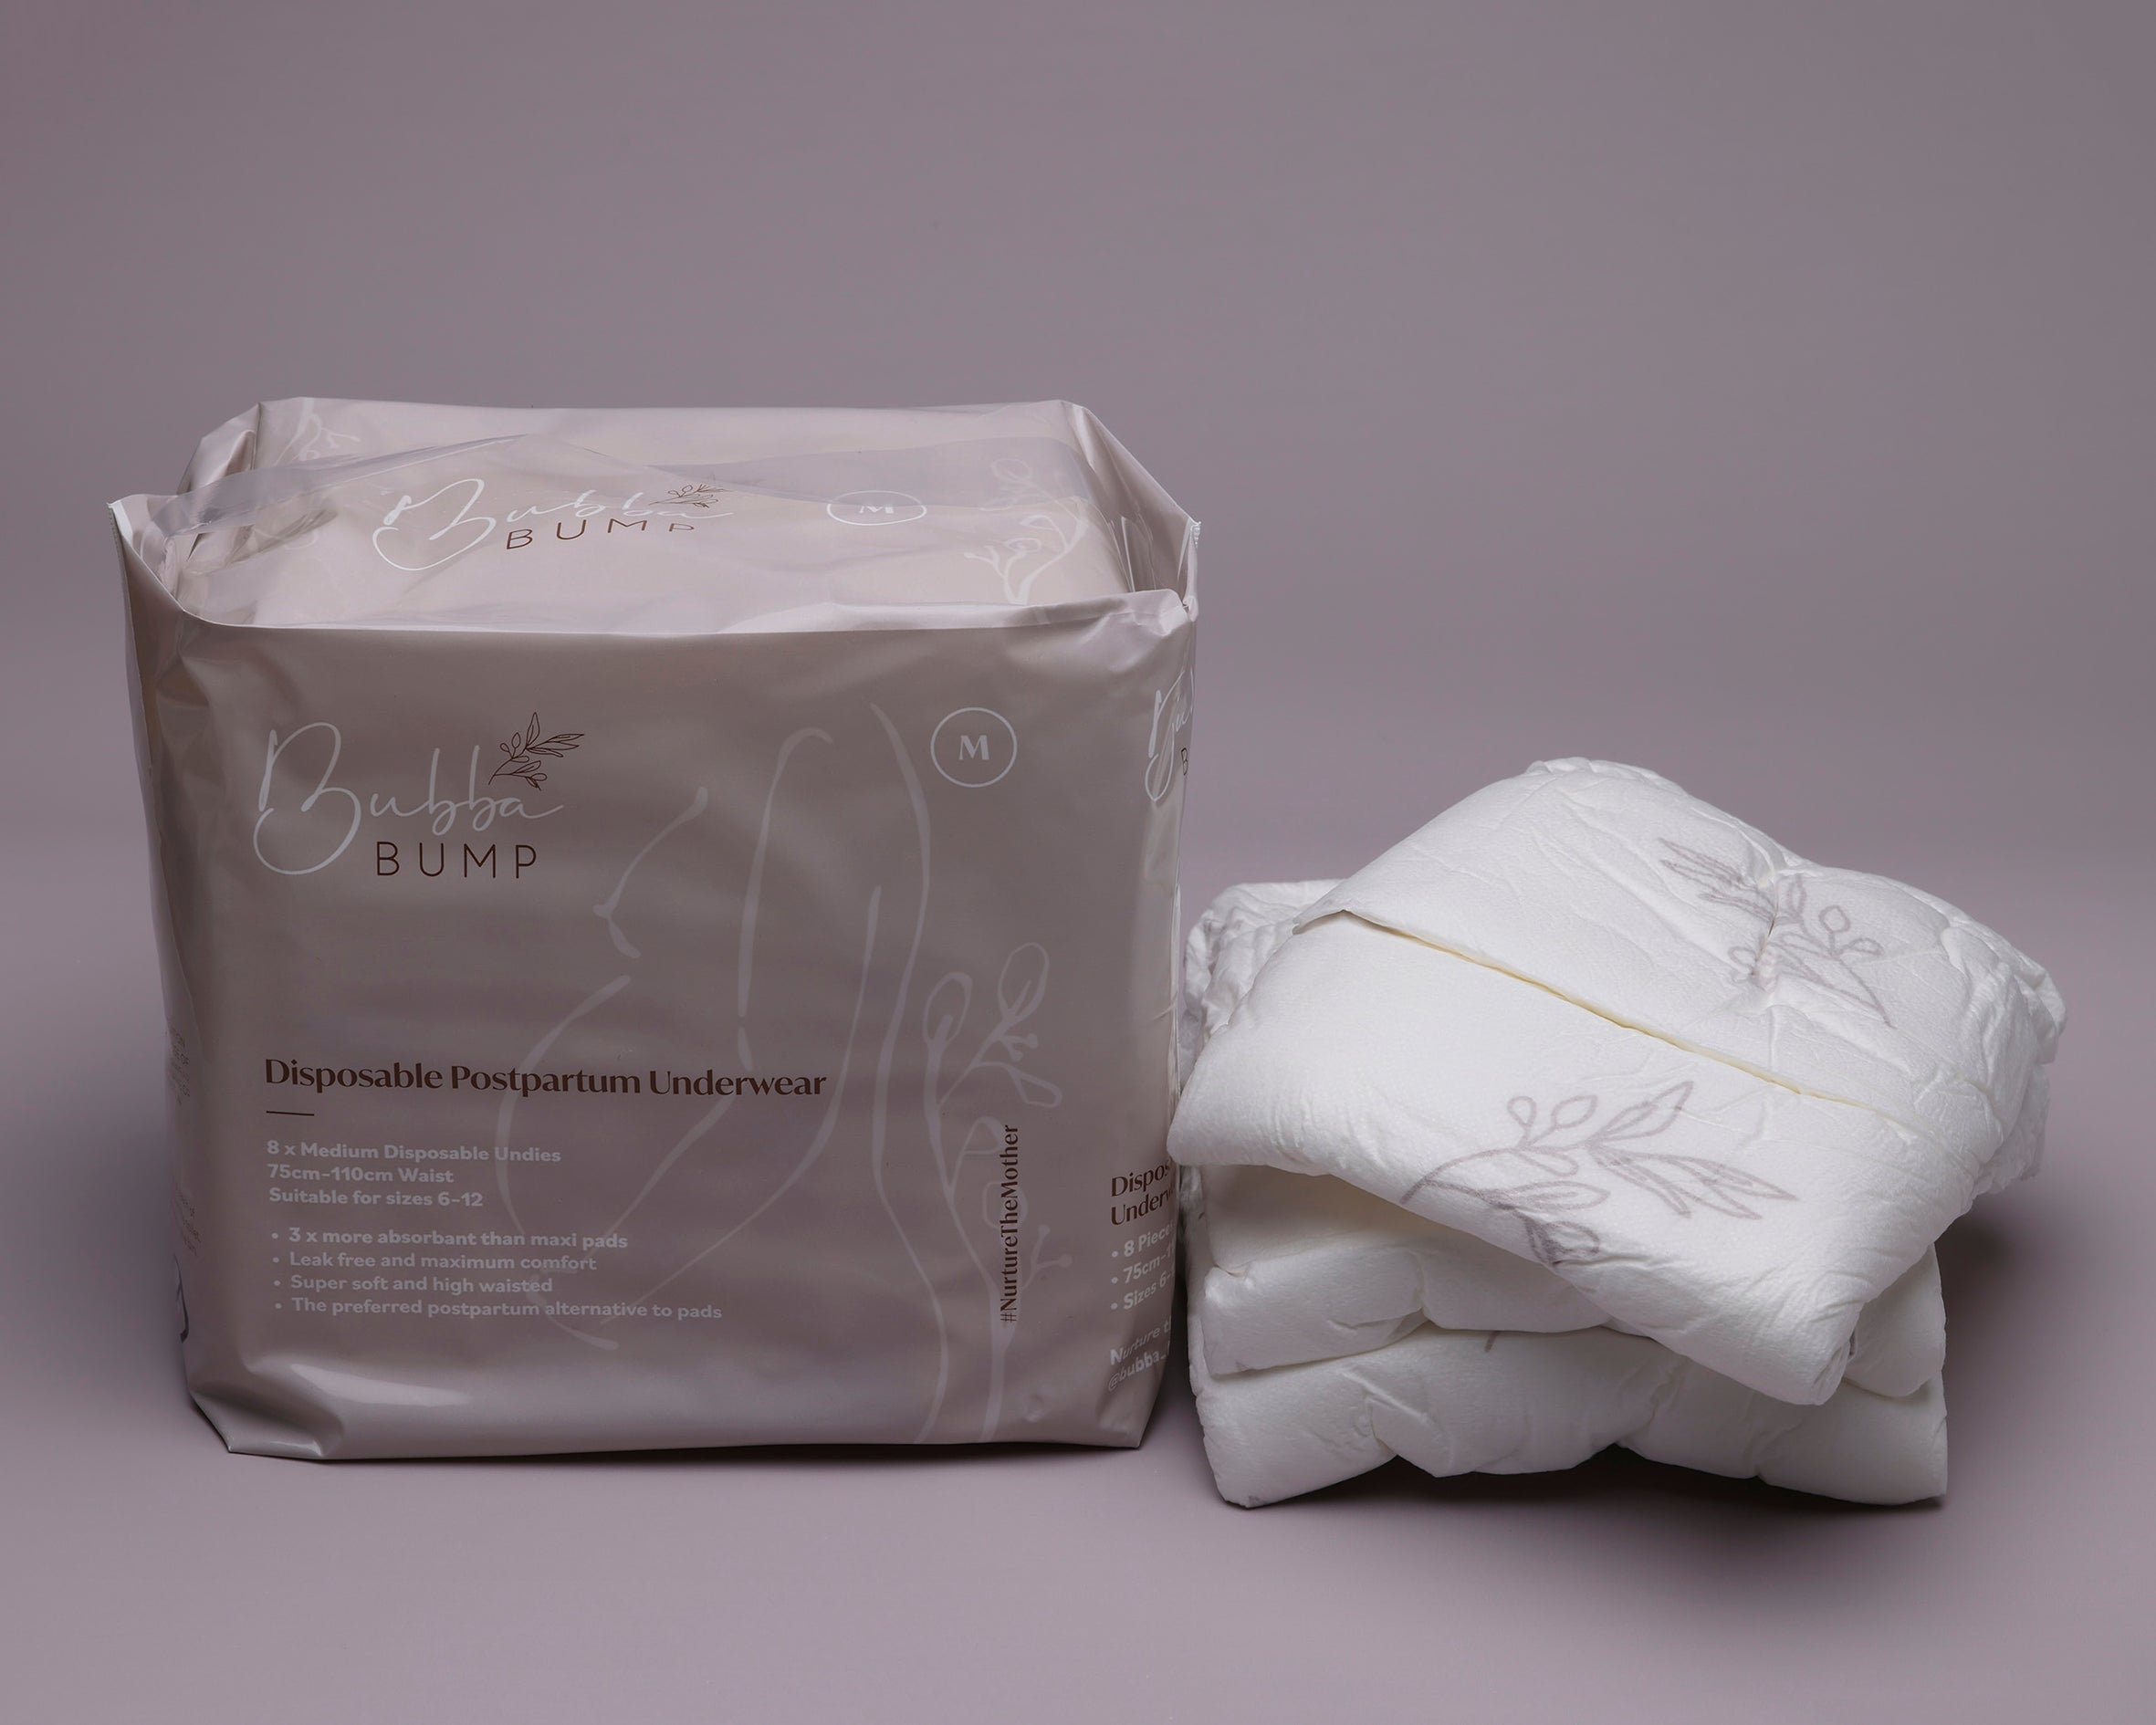 Postpartum Disposable Absorbent Underwear